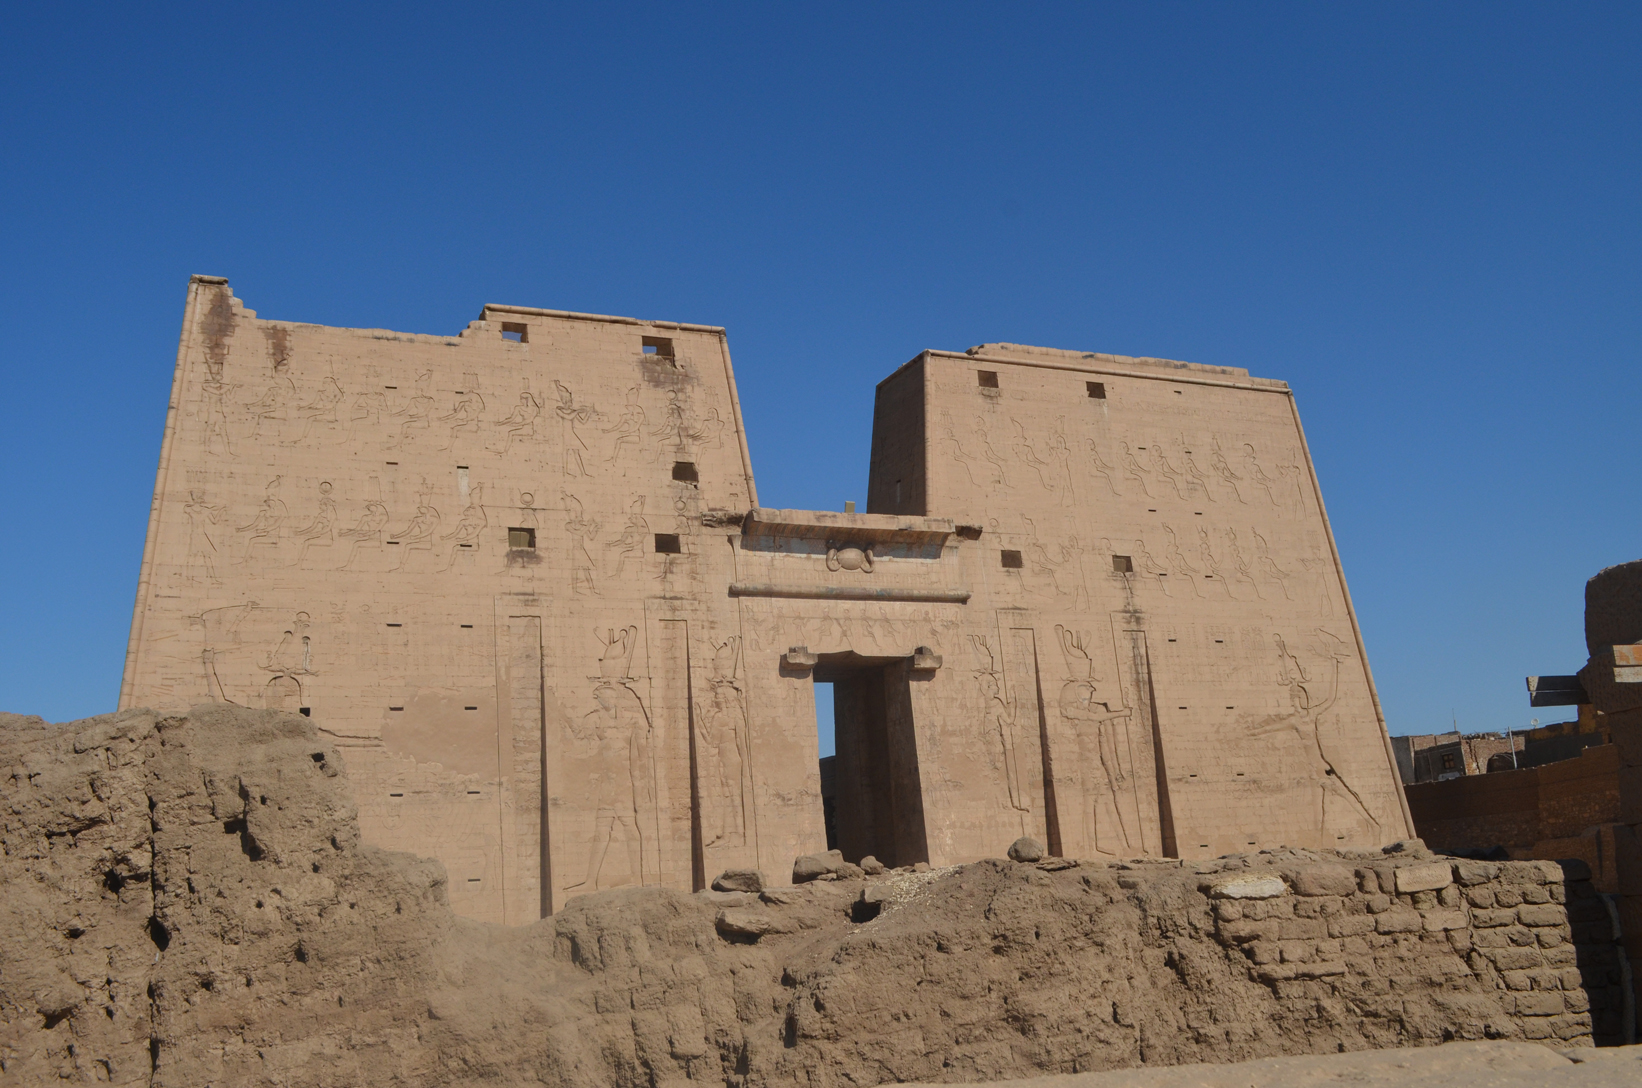 
Tempio di Edfu